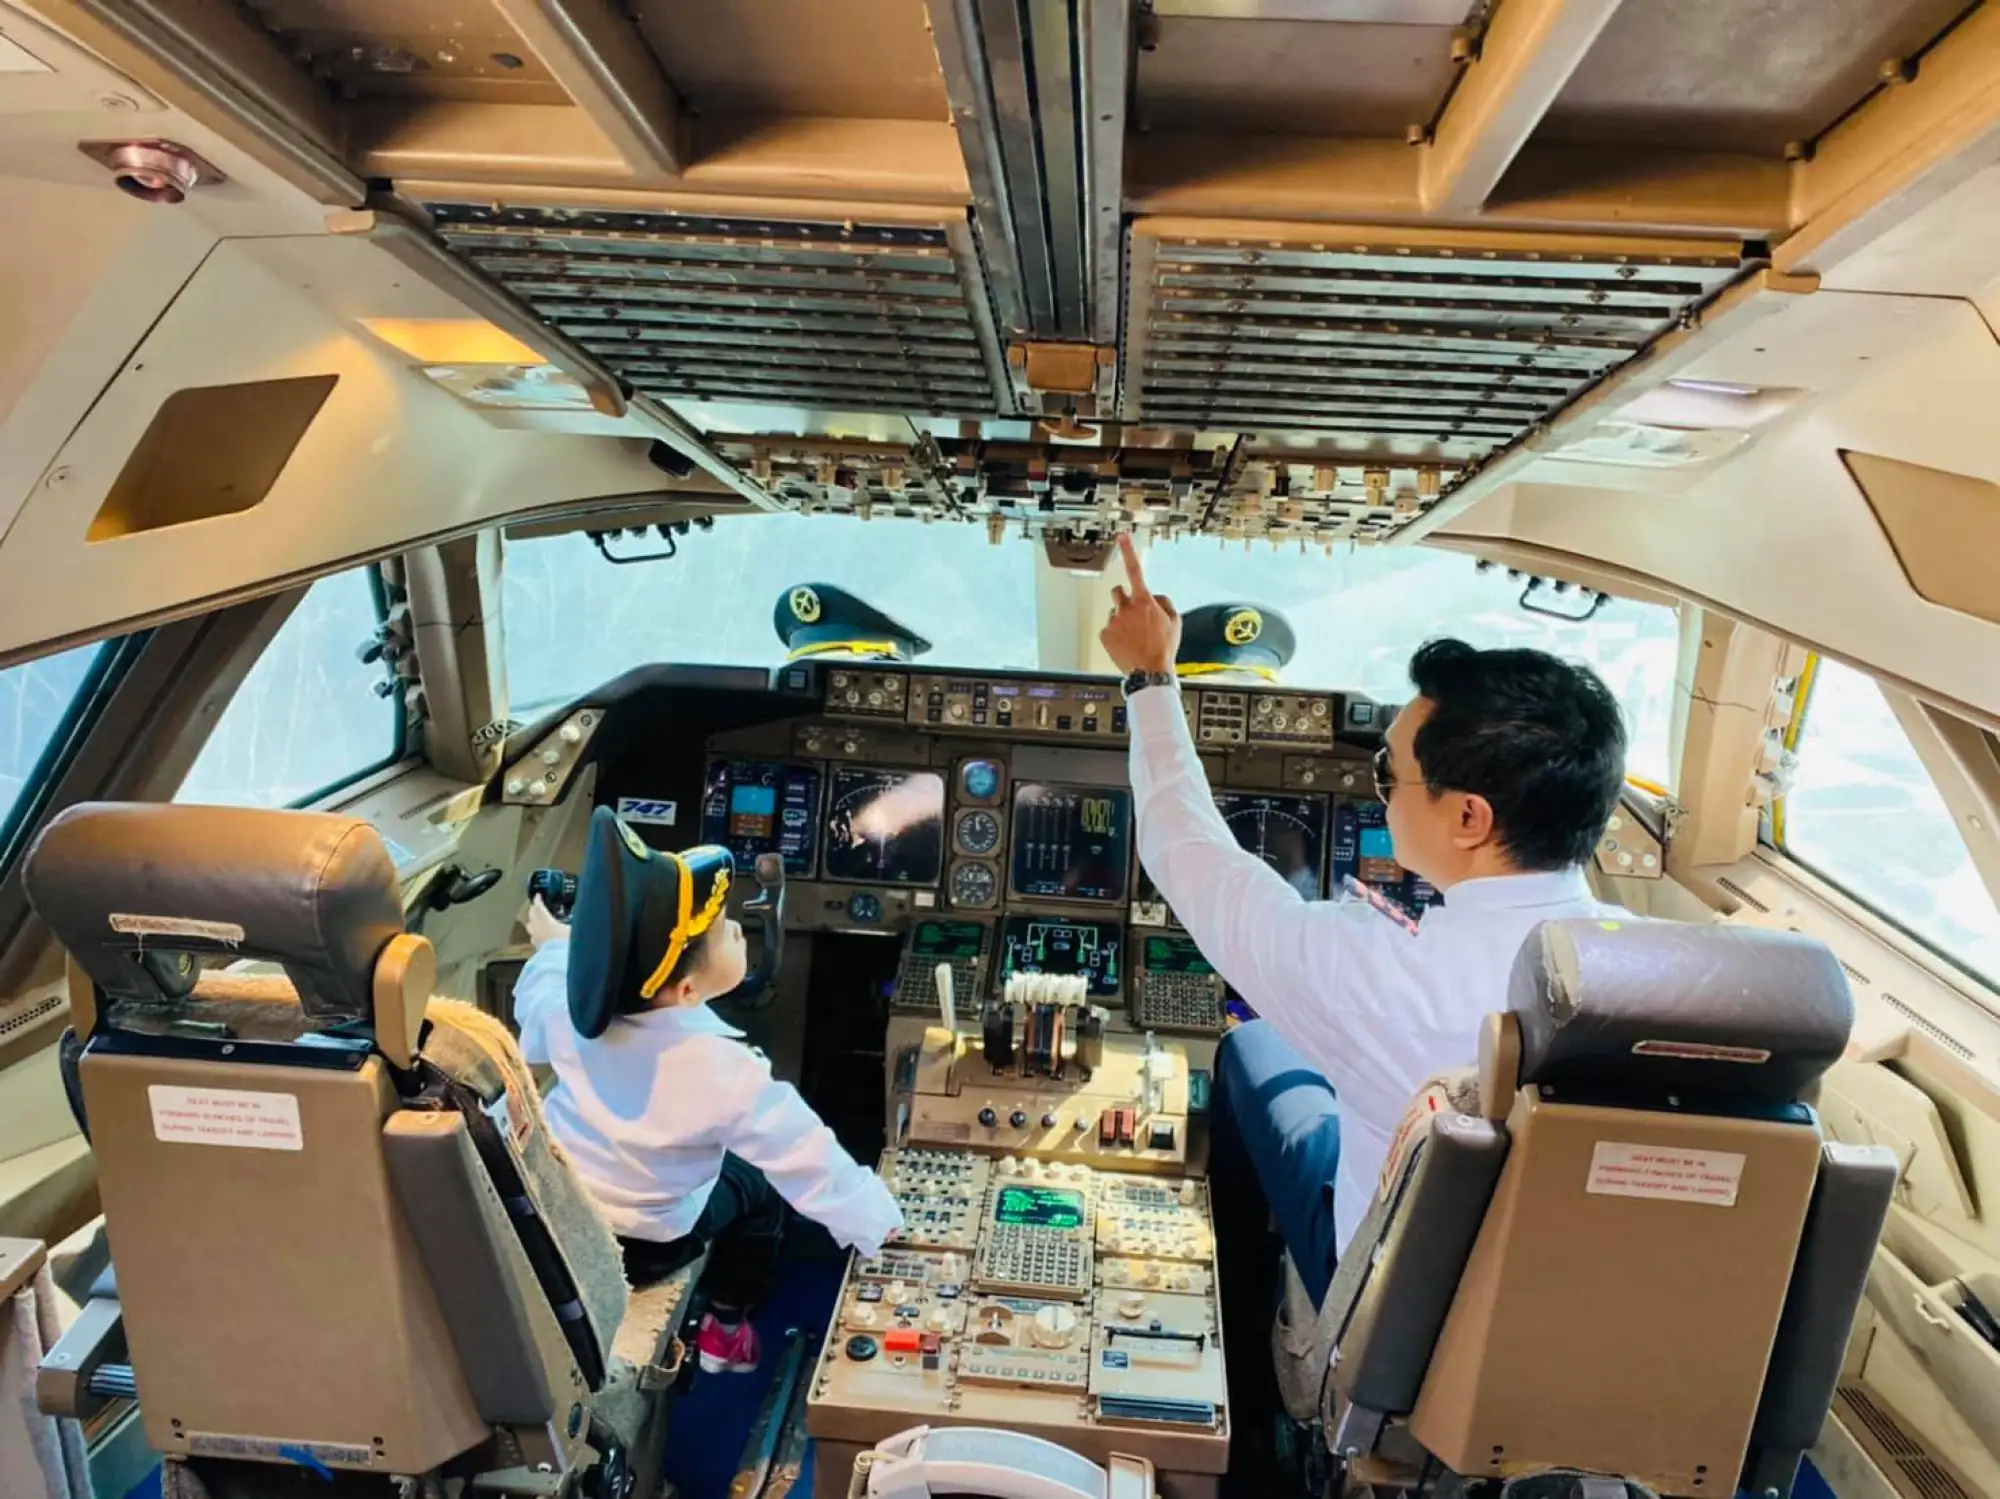 曼谷747咖啡厅可以让顾客体验在驾驶舱 戴机长帽、驾驶飞机（图片来源：@747CafeLadkrabang 脸书帐号）